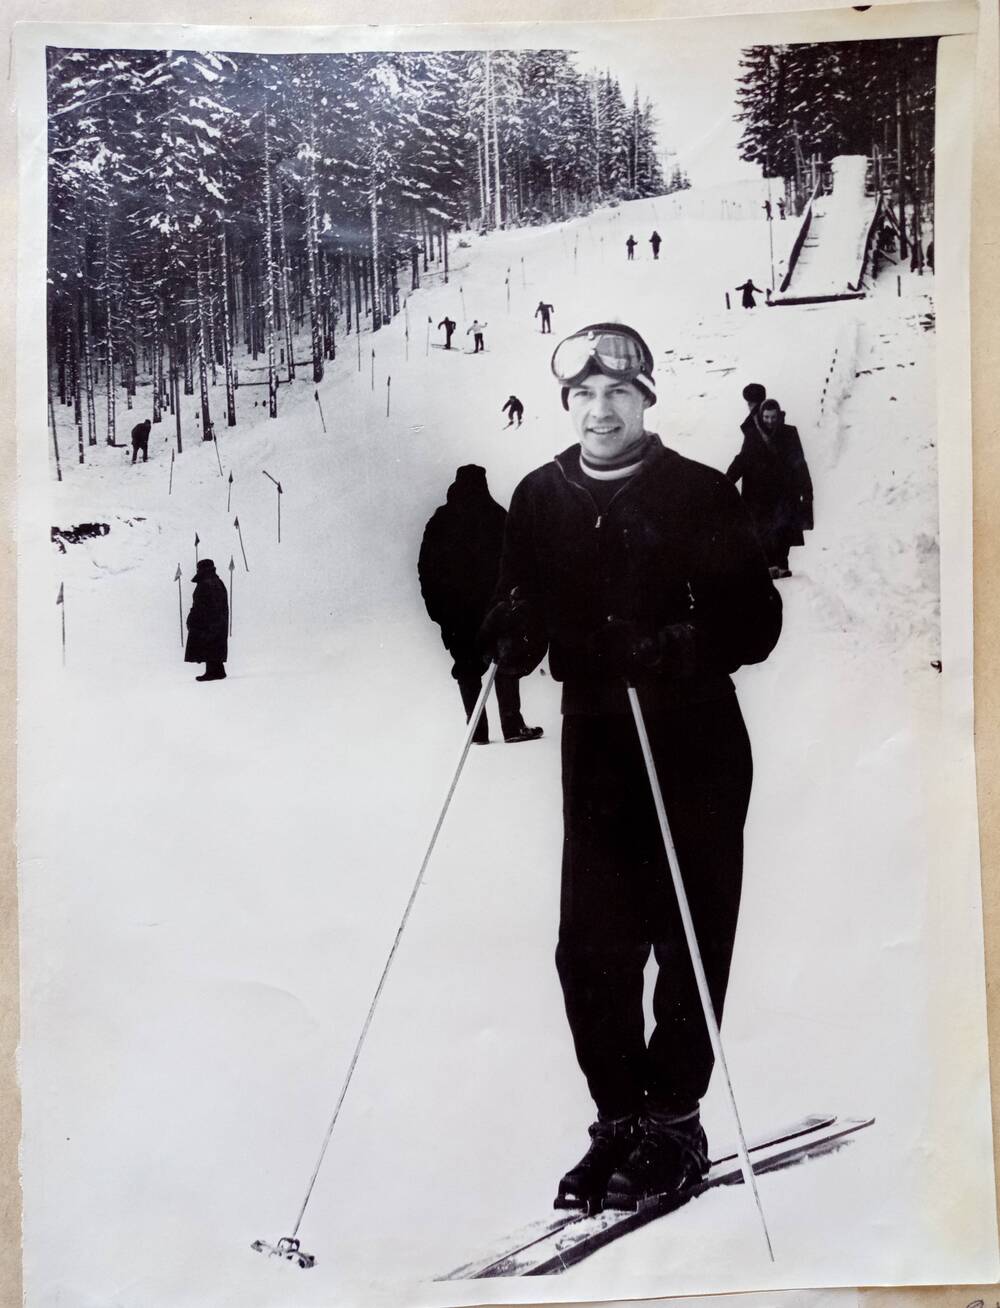 Фото из альбома по истории развития лыжного спорта в Н. Тагиле с 1926 года. Общий вид слаломной трассы на горе Долгой.